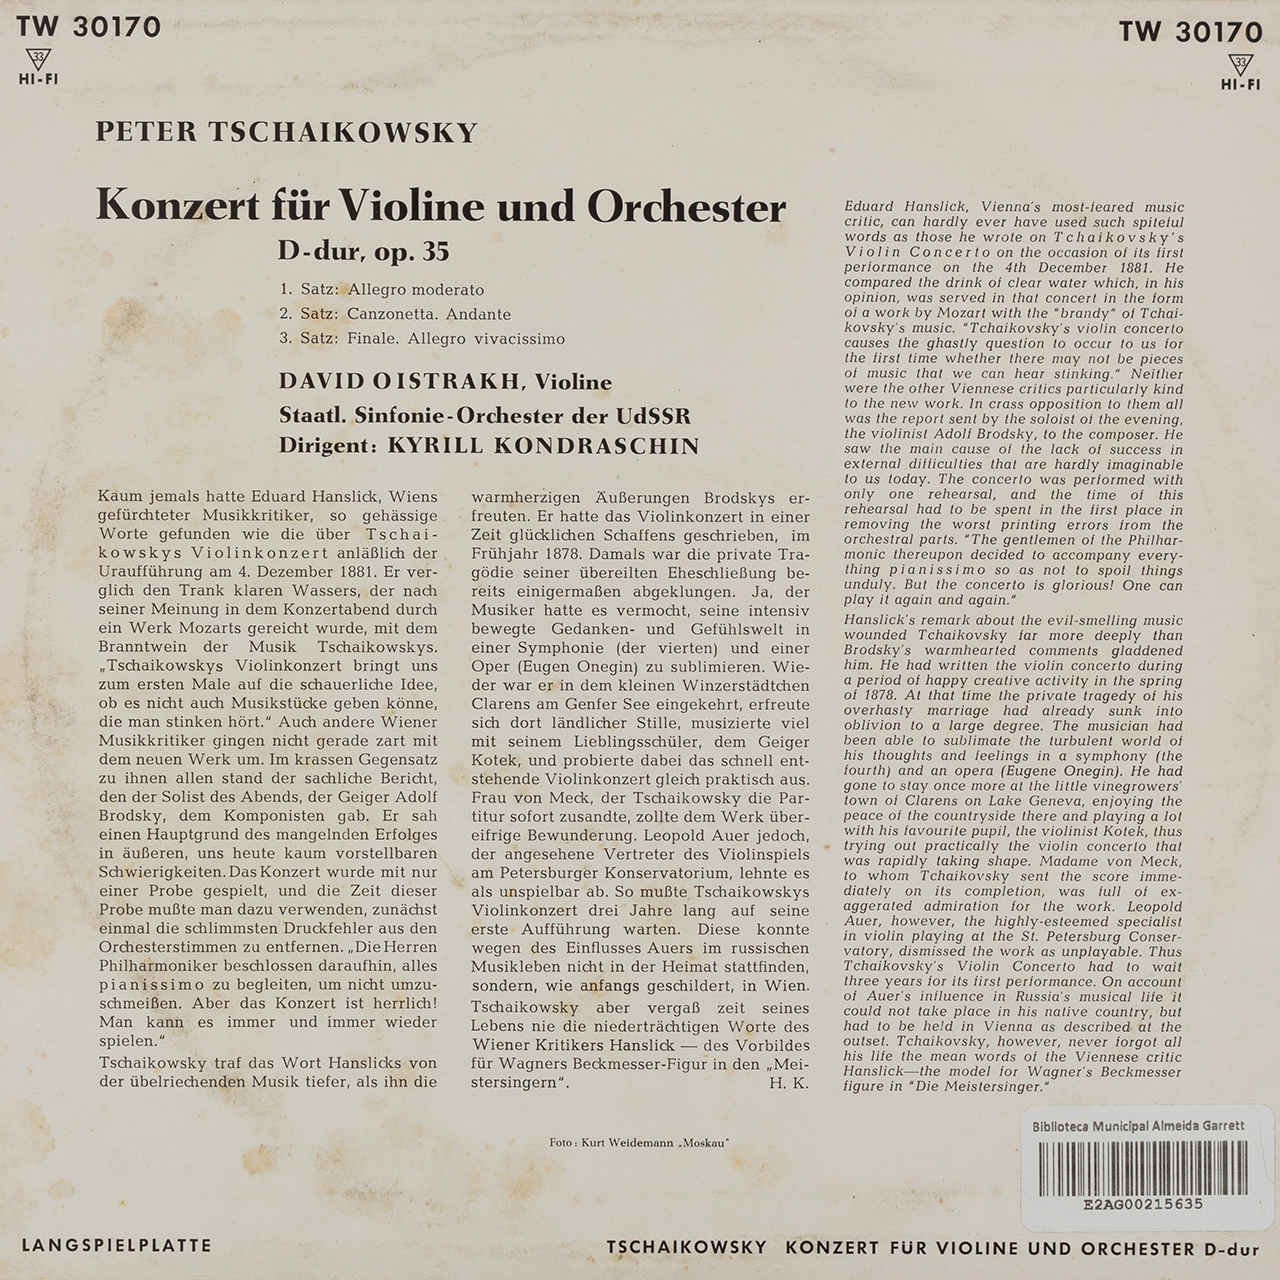 Tchaikovsky: Konzert für Violine un Orchester D-dur op. 35